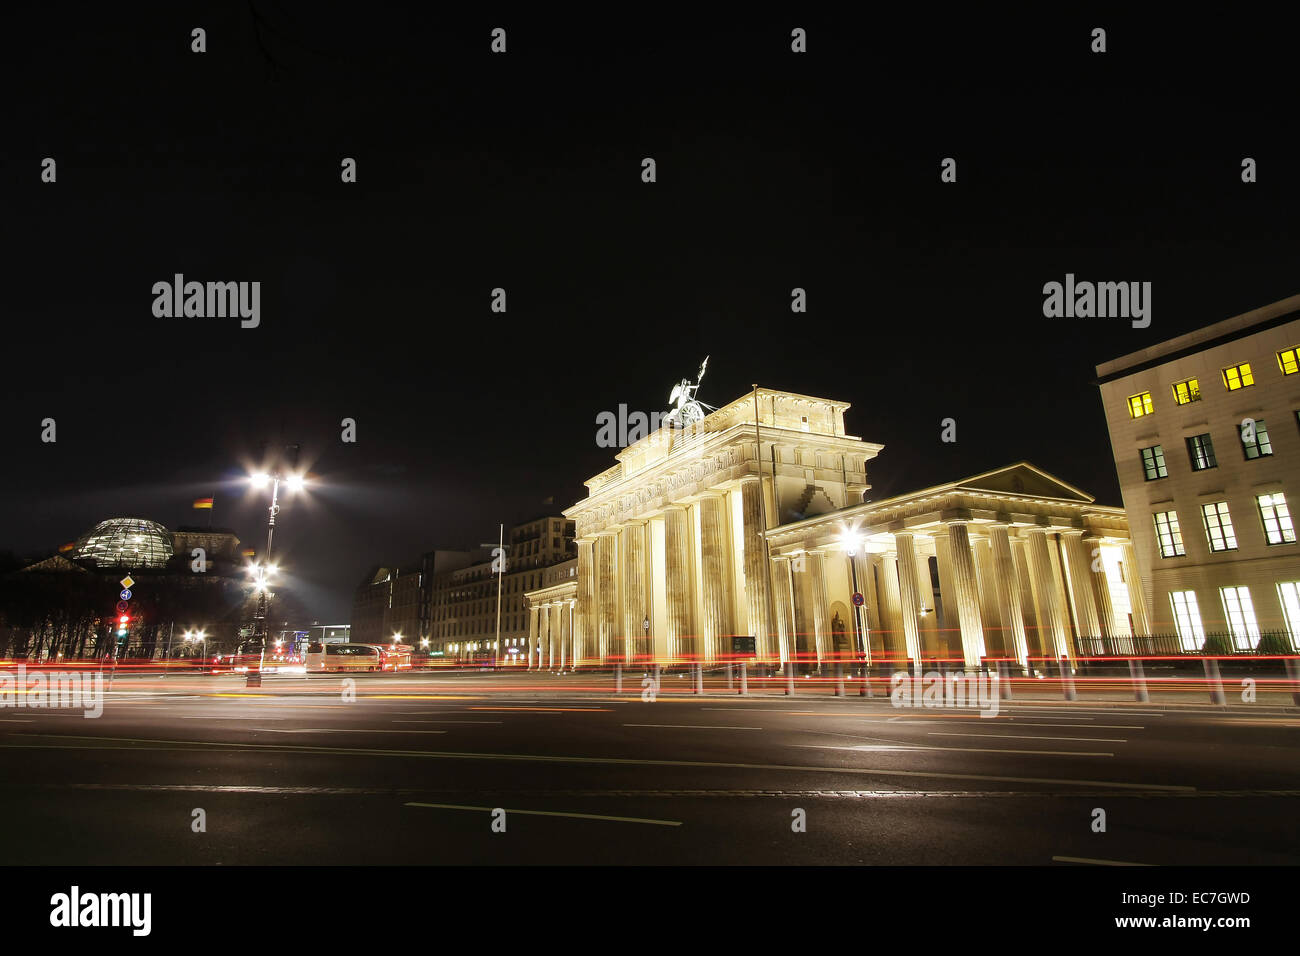 Porte de Brandebourg, Berlin, nightshot Banque D'Images